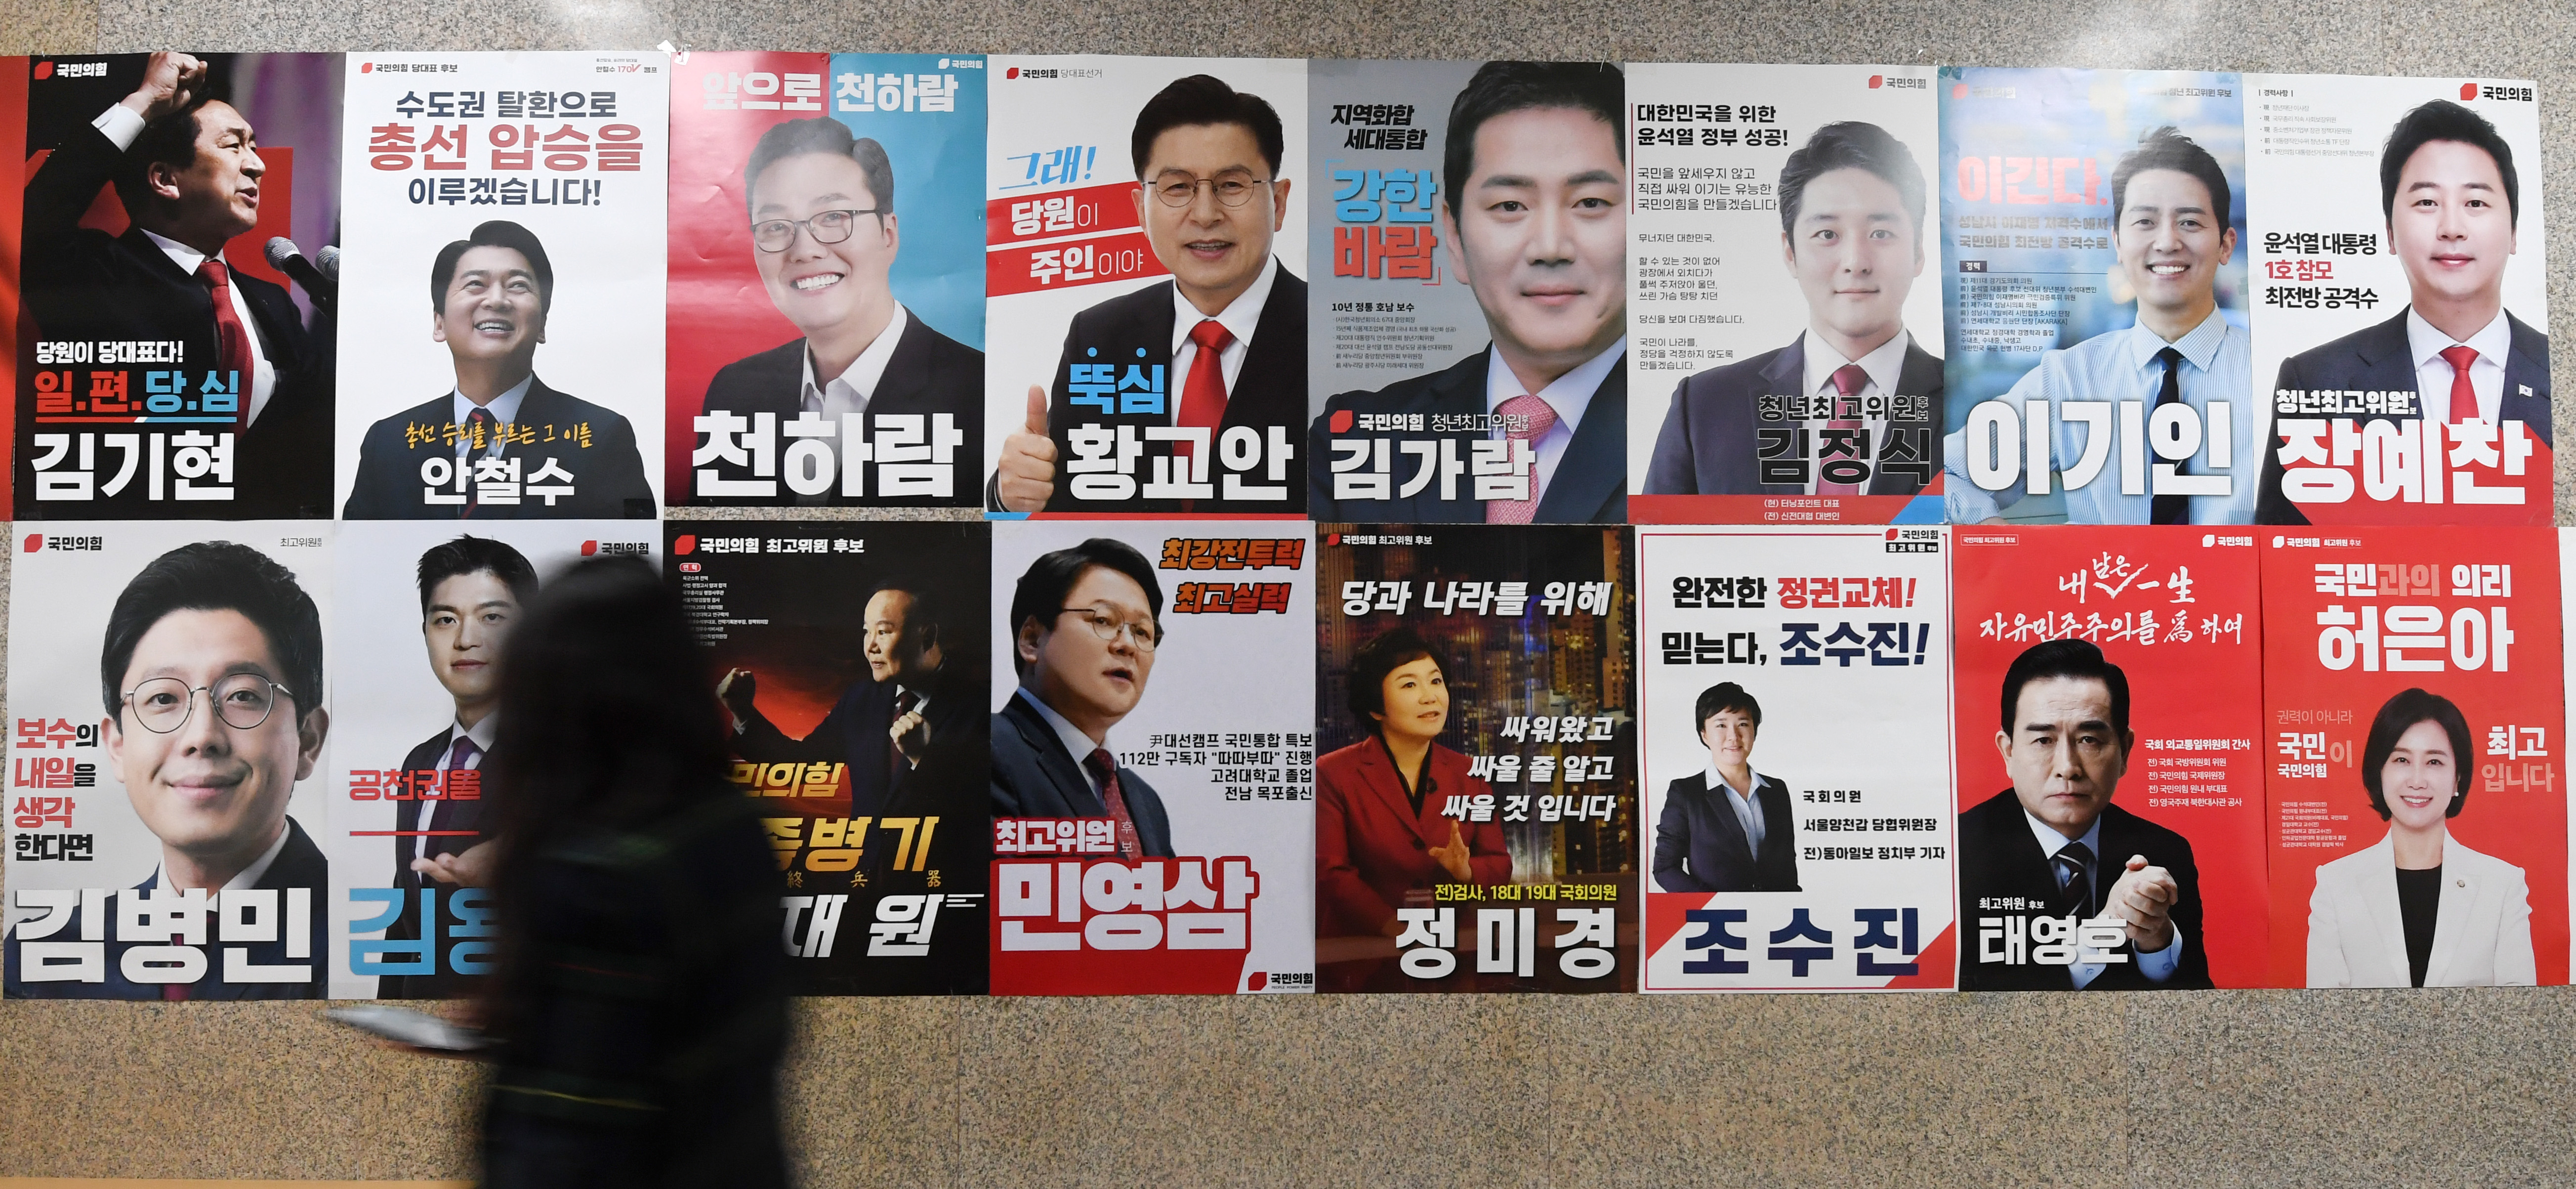 국민의힘 3·8 전당대회를 하루 앞둔 7일 서울 여의도 국회에 후보들의 포스터가 붙어 있다.  도준석 기자